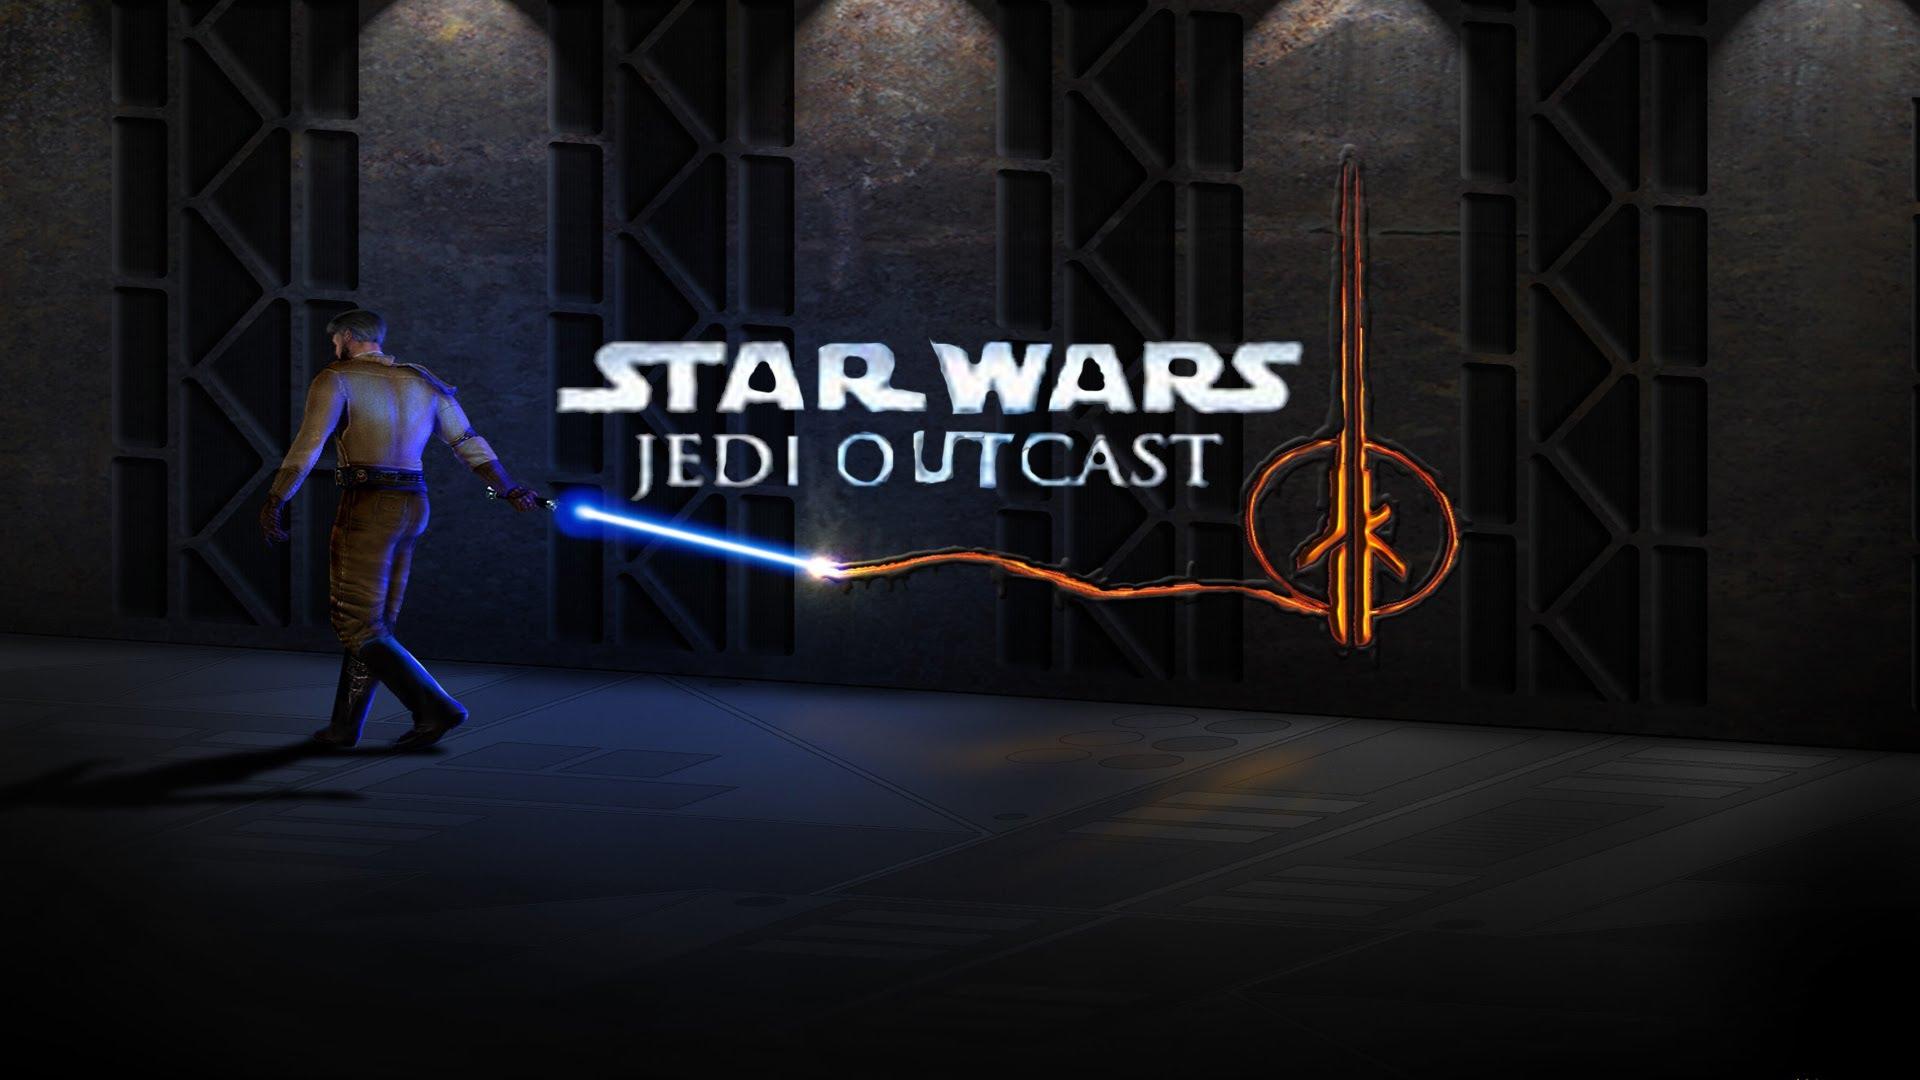 Star Wars Jedi Knight II: Jedi Outcast Wallpapers